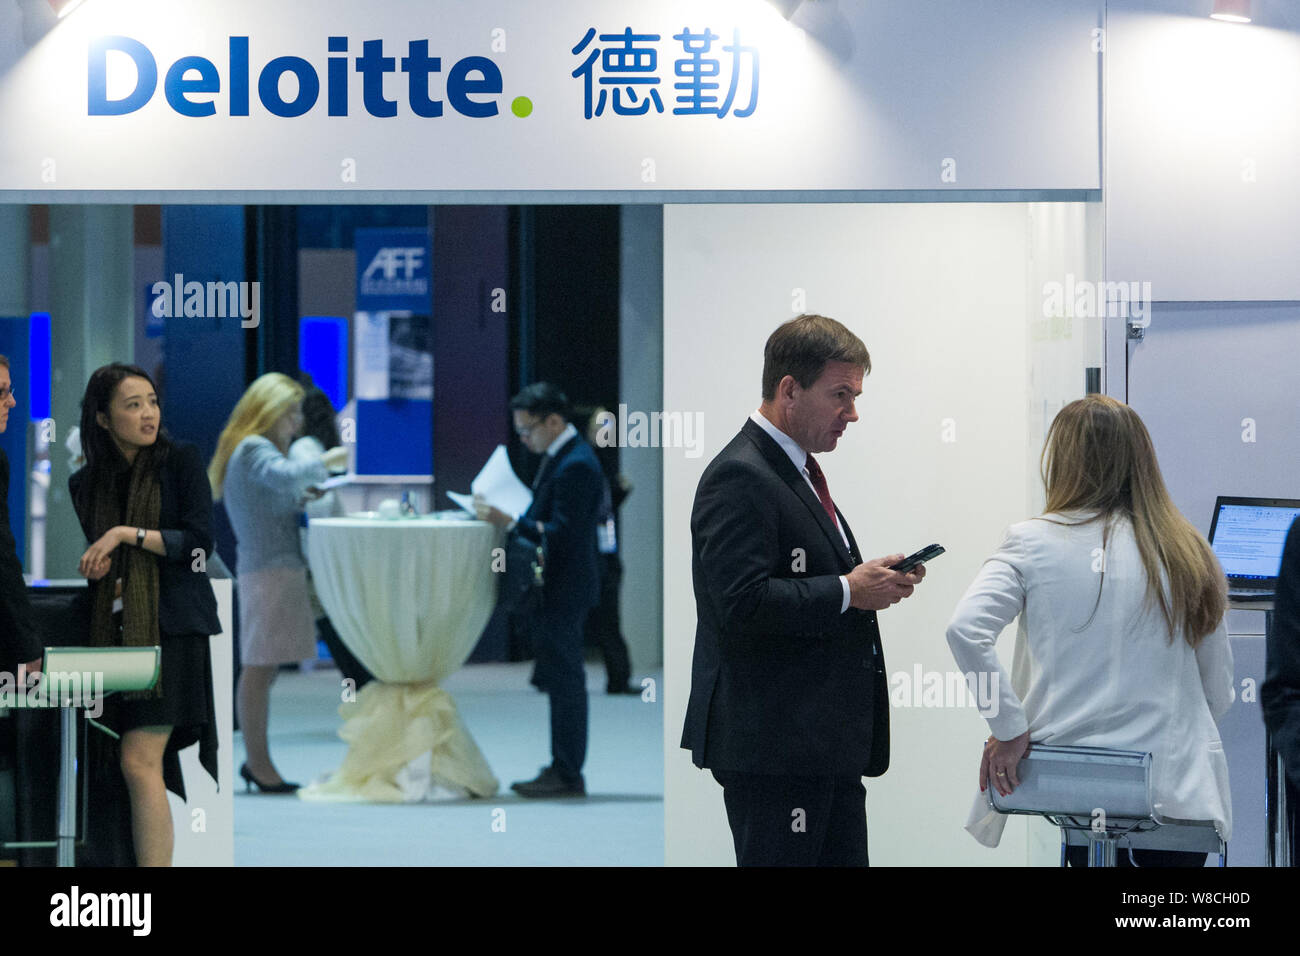 --FILE--cinese e i visitatori stranieri sono visti presso lo stand di Deloitte nel corso di una mostra a Hong Kong, Cina, 19 gennaio 2015. La affili cinese Foto Stock